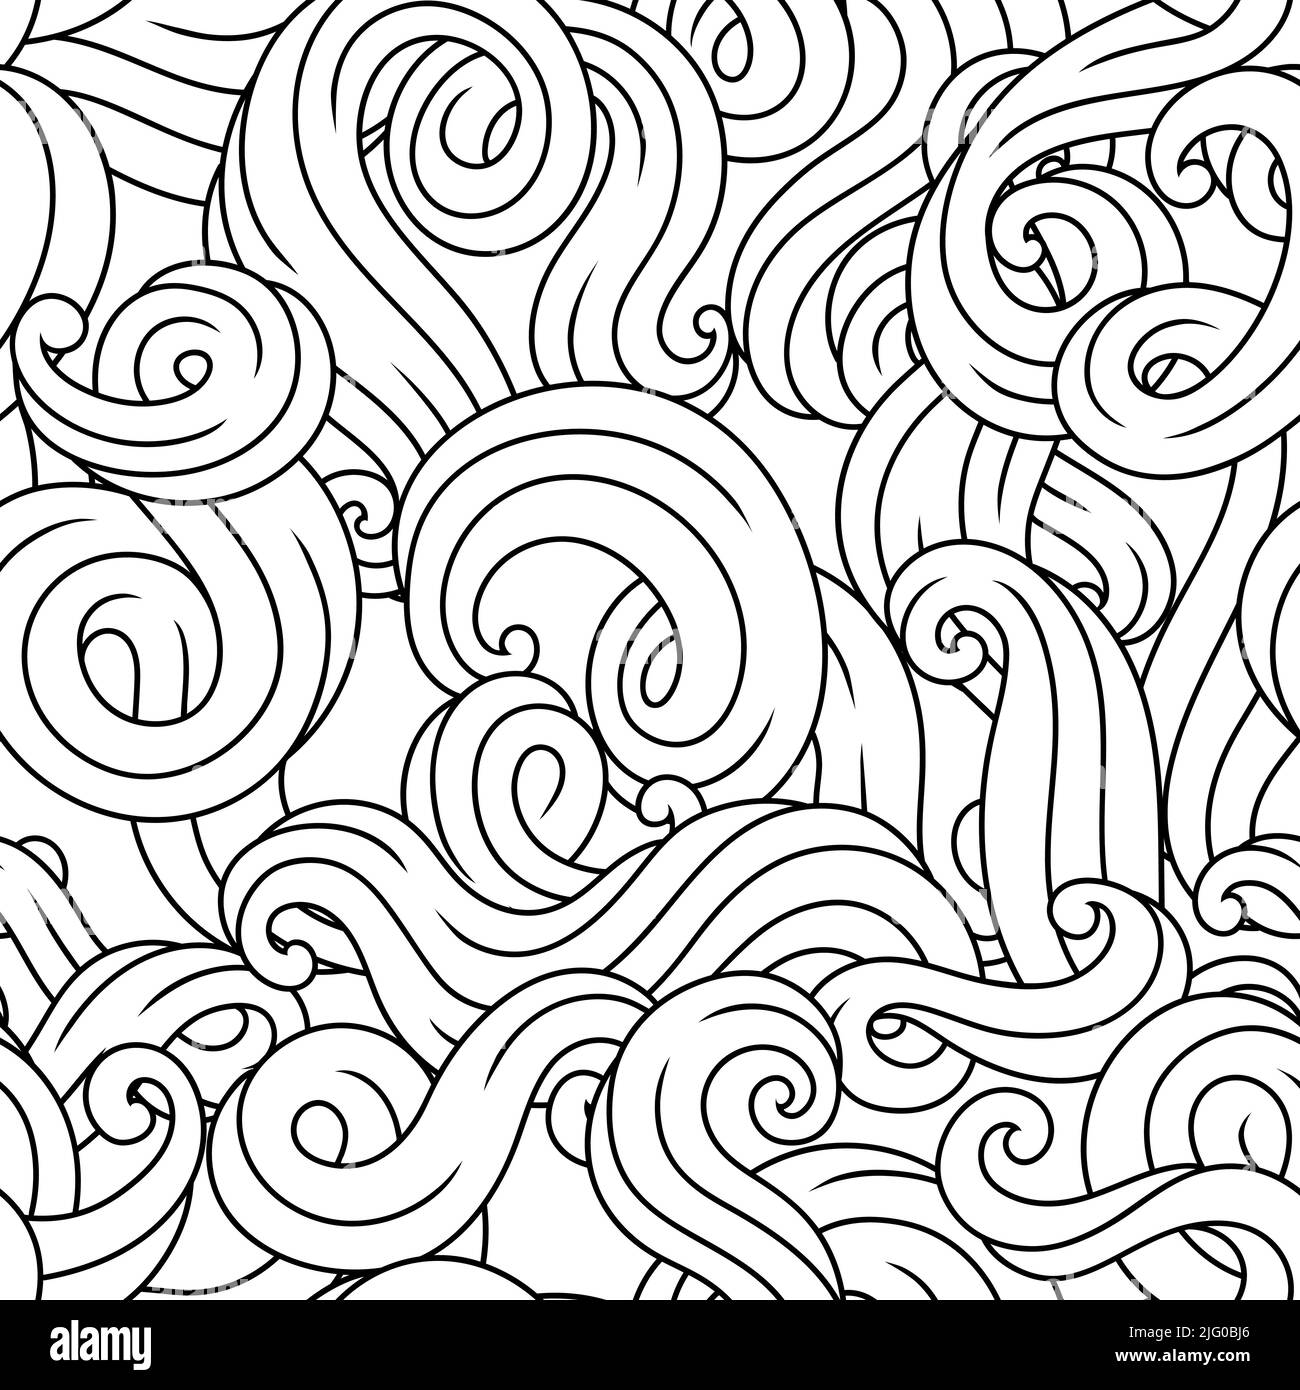 Nahtloses Muster mit Wellenlinien-Locken. Schwarz-weiße Streifen. Wirbelnde abstrakte Haare oder Pelze. Stock Vektor